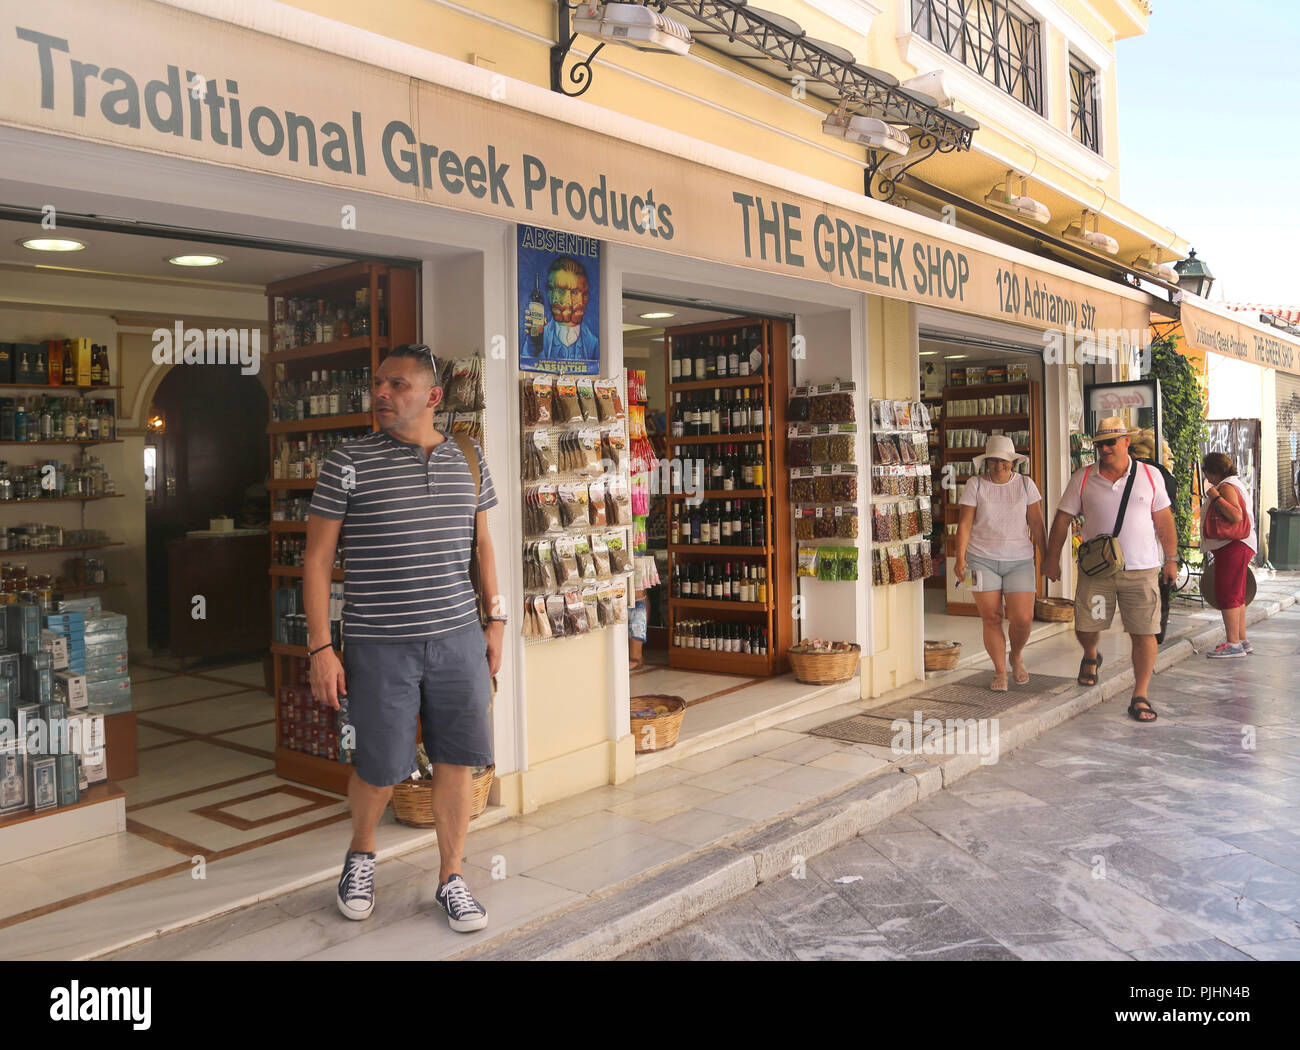 greek shop